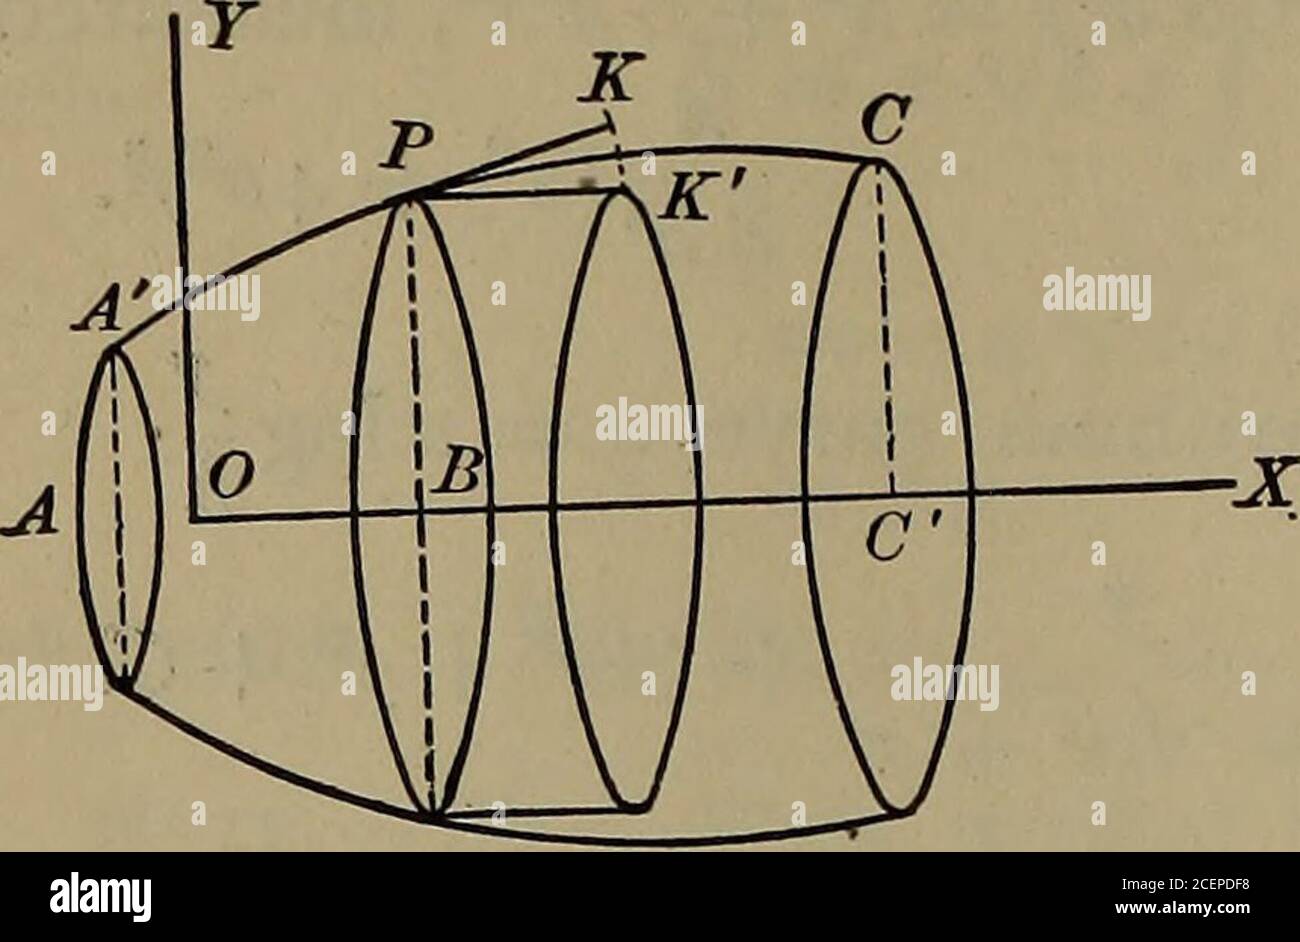 Cálculo diferencial e integral. -eriza la circunferencia de un círculo, Y  cada coordenada del thecurve, como PP( = y), genera el área de un círculo,  podemos ver la superficie y el